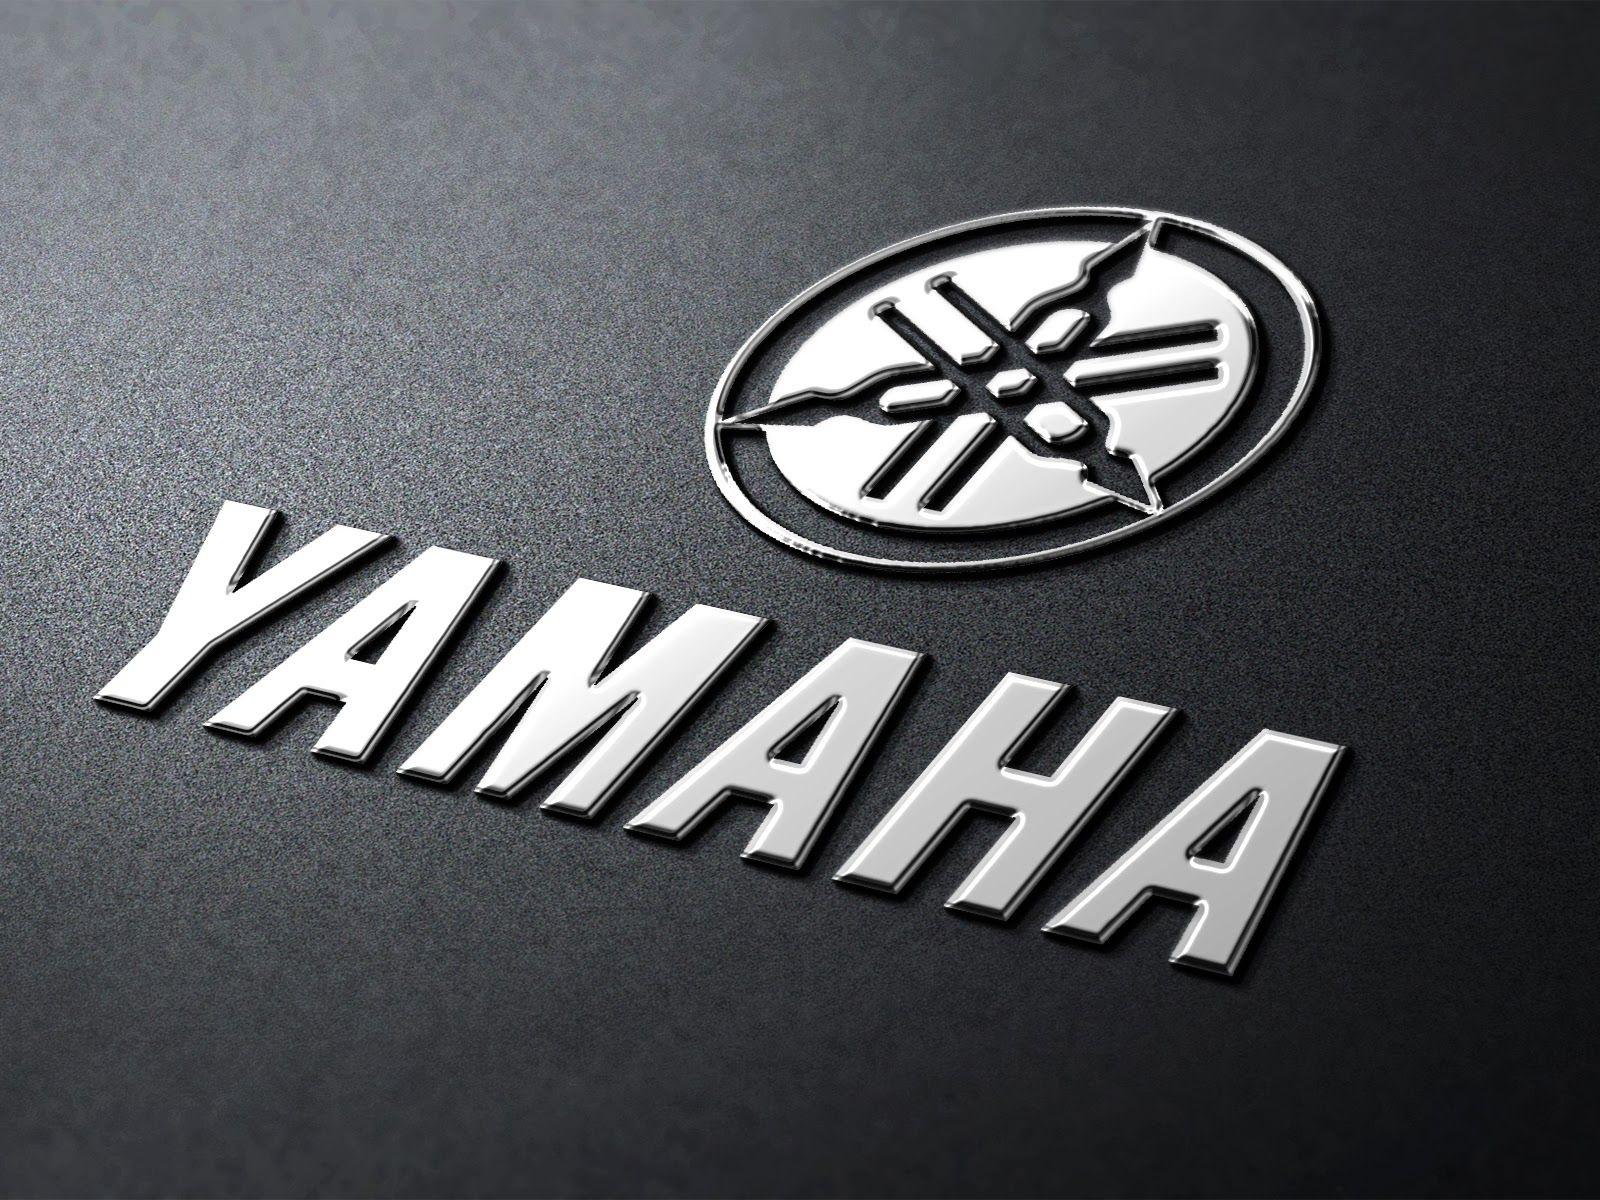 yamaha company presentation